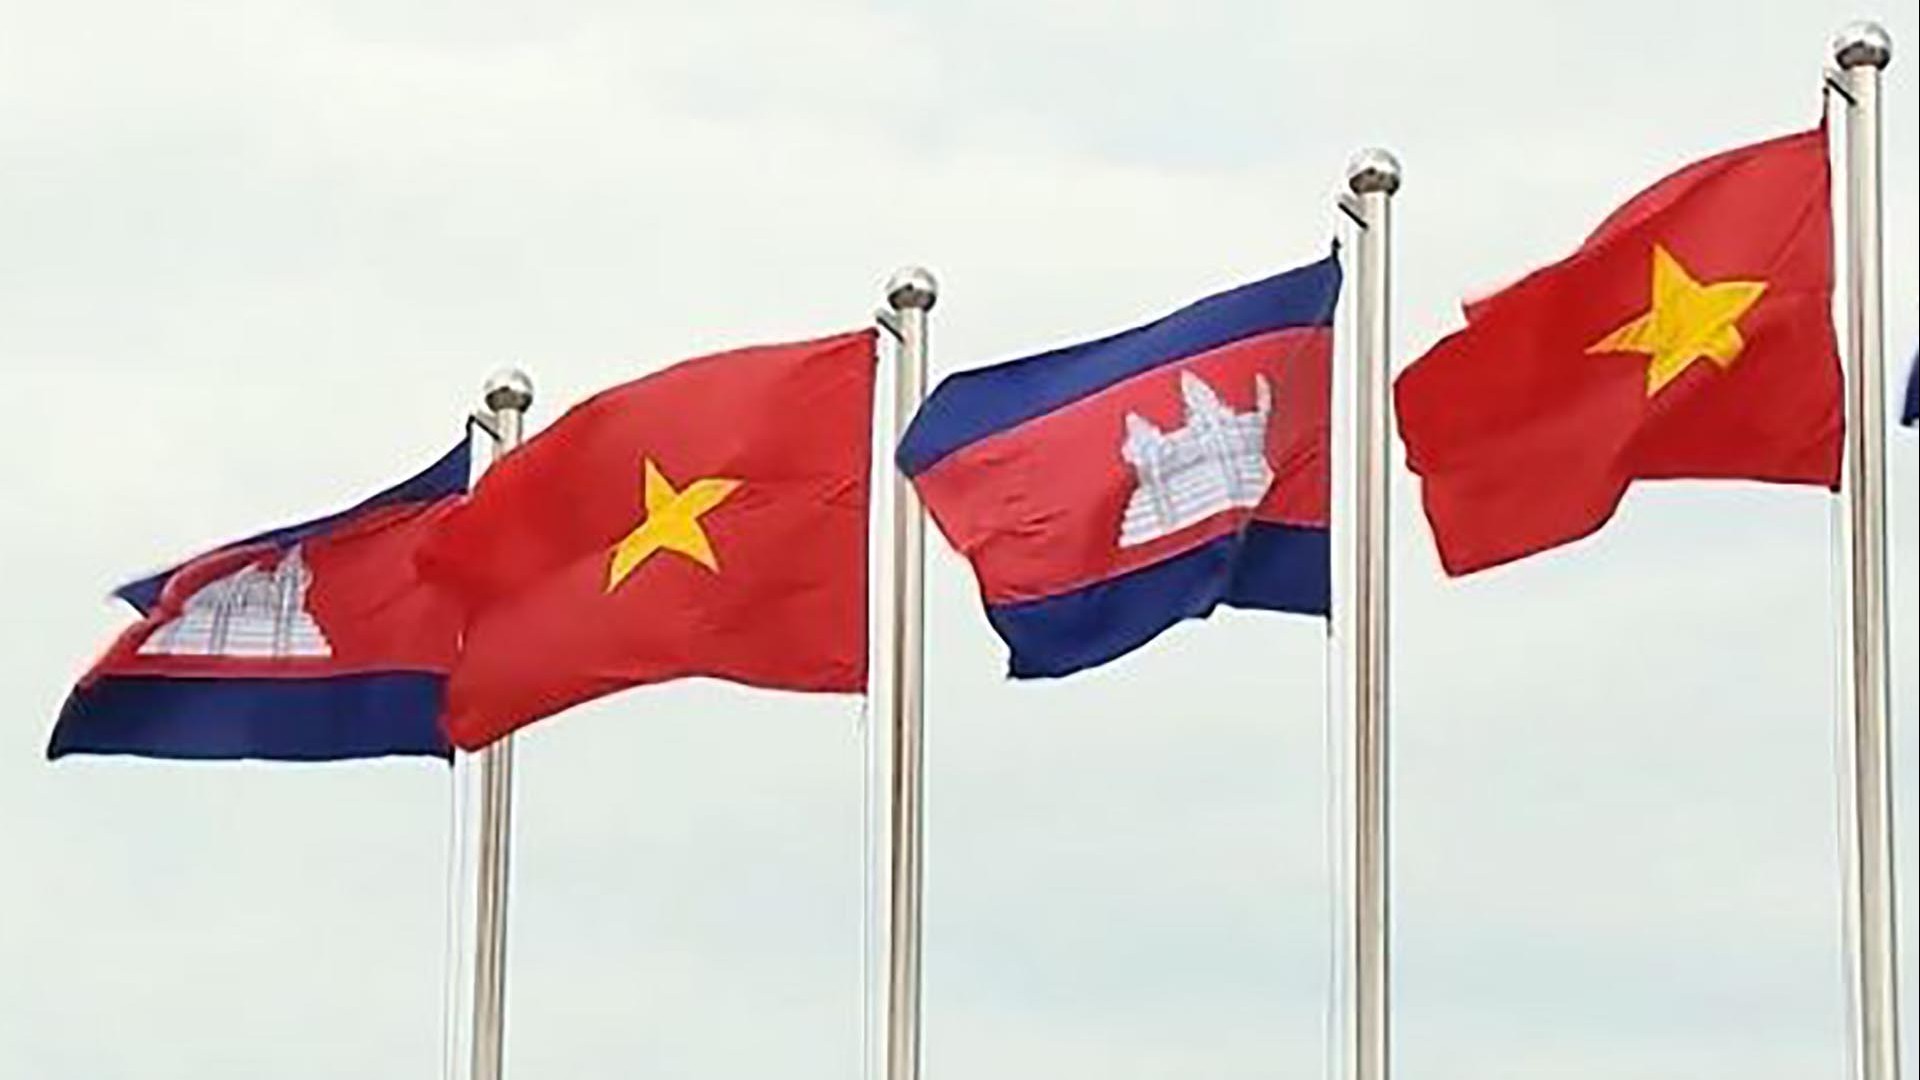 Hội nghị Hợp tác và Phát triển các tỉnh biên giới Việt Nam-Campuchia lần thứ 12 sẽ diễn ra tại Tây Ninh